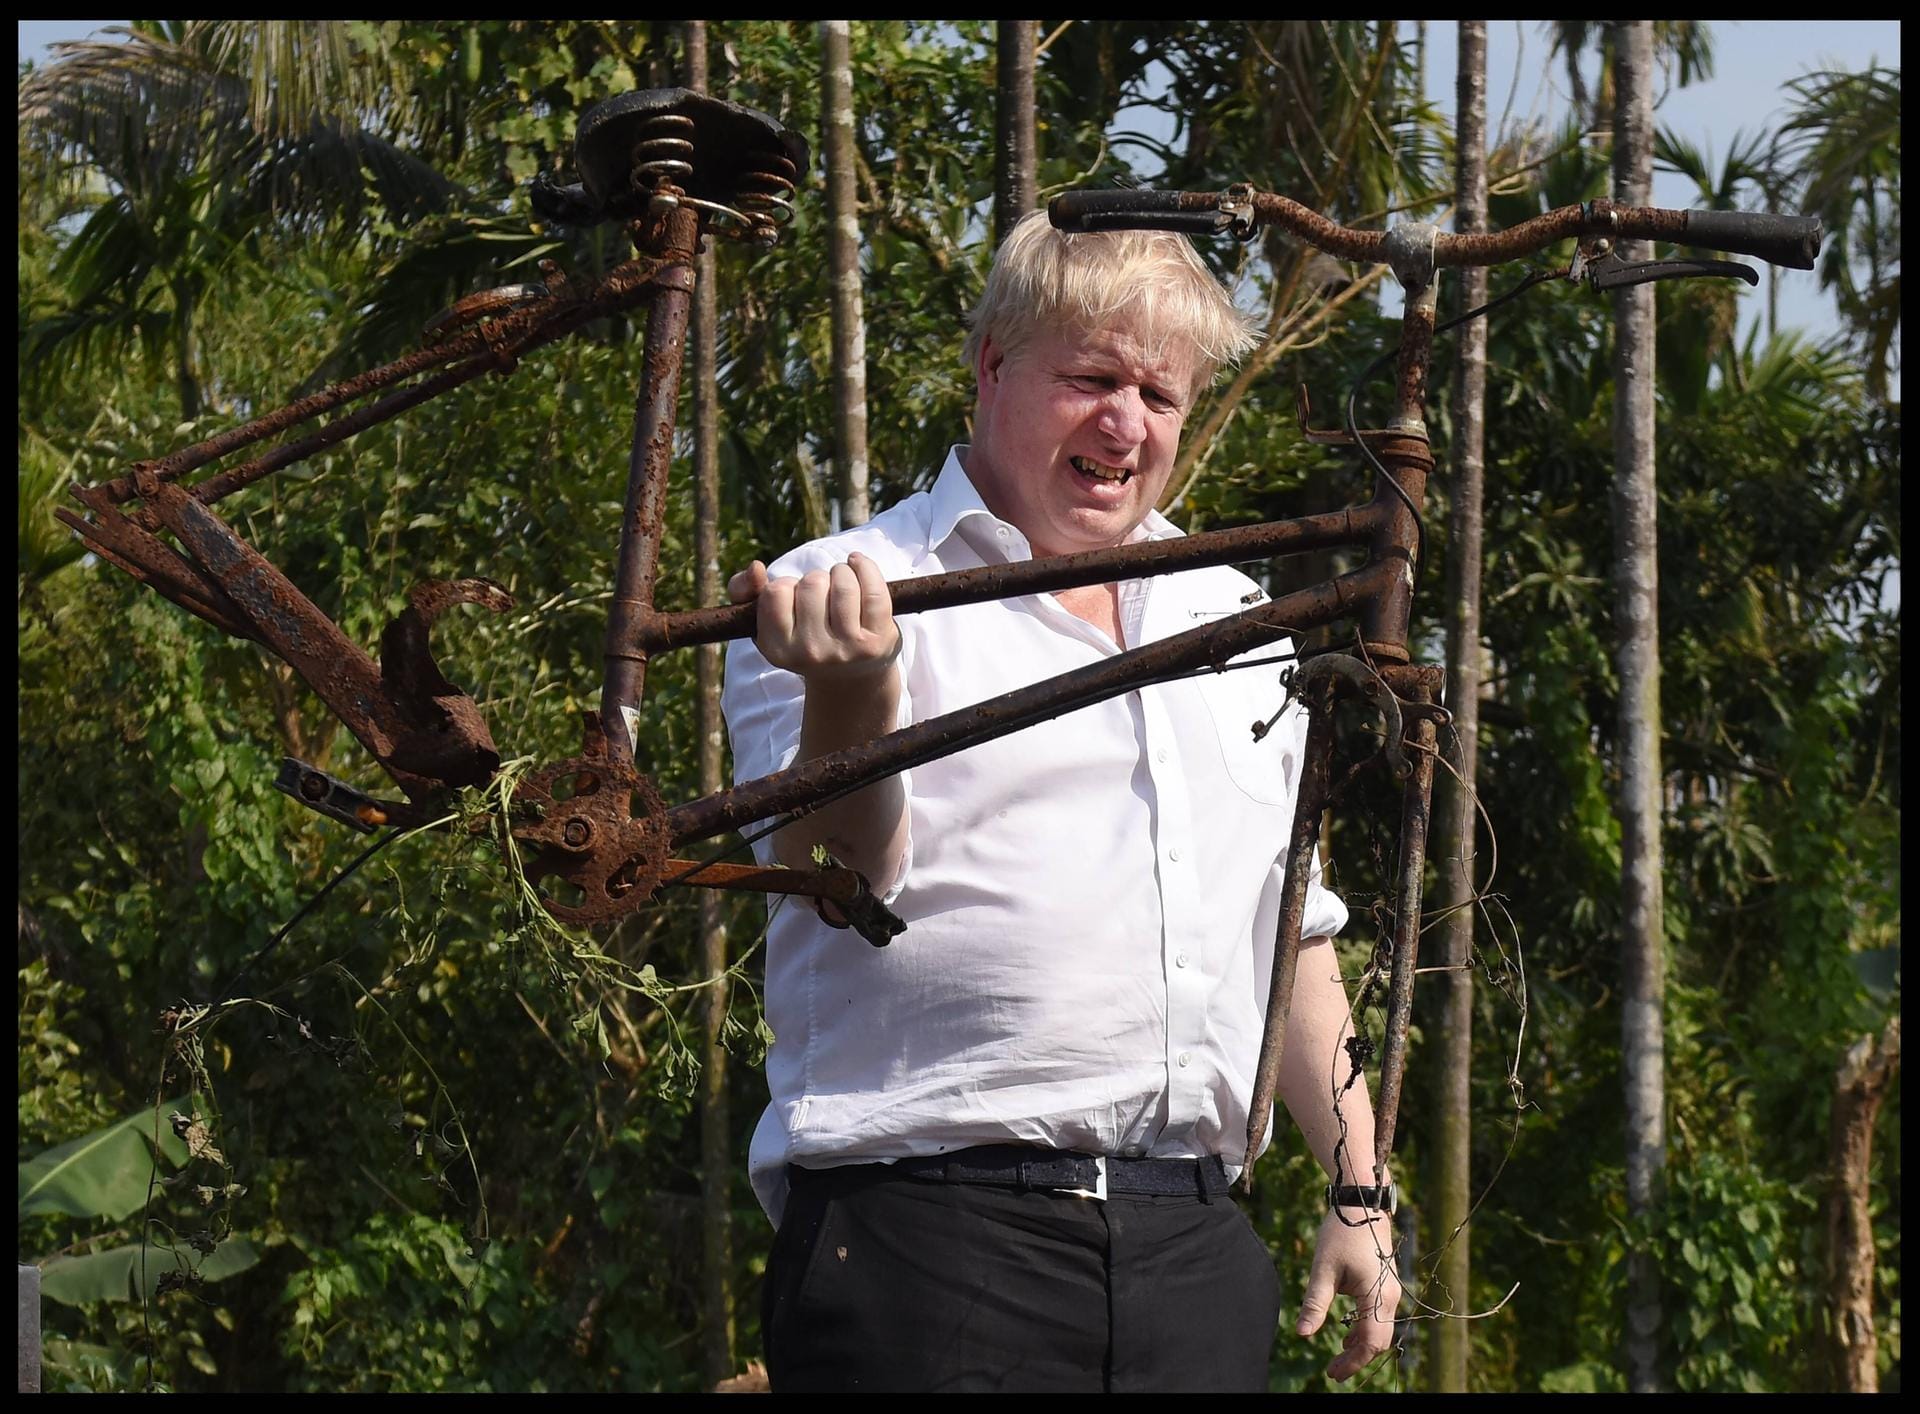 Februar 2018: Als Außenminister besucht Johnson ein niedergebranntes Rohingya-Dorf in Myanmar.